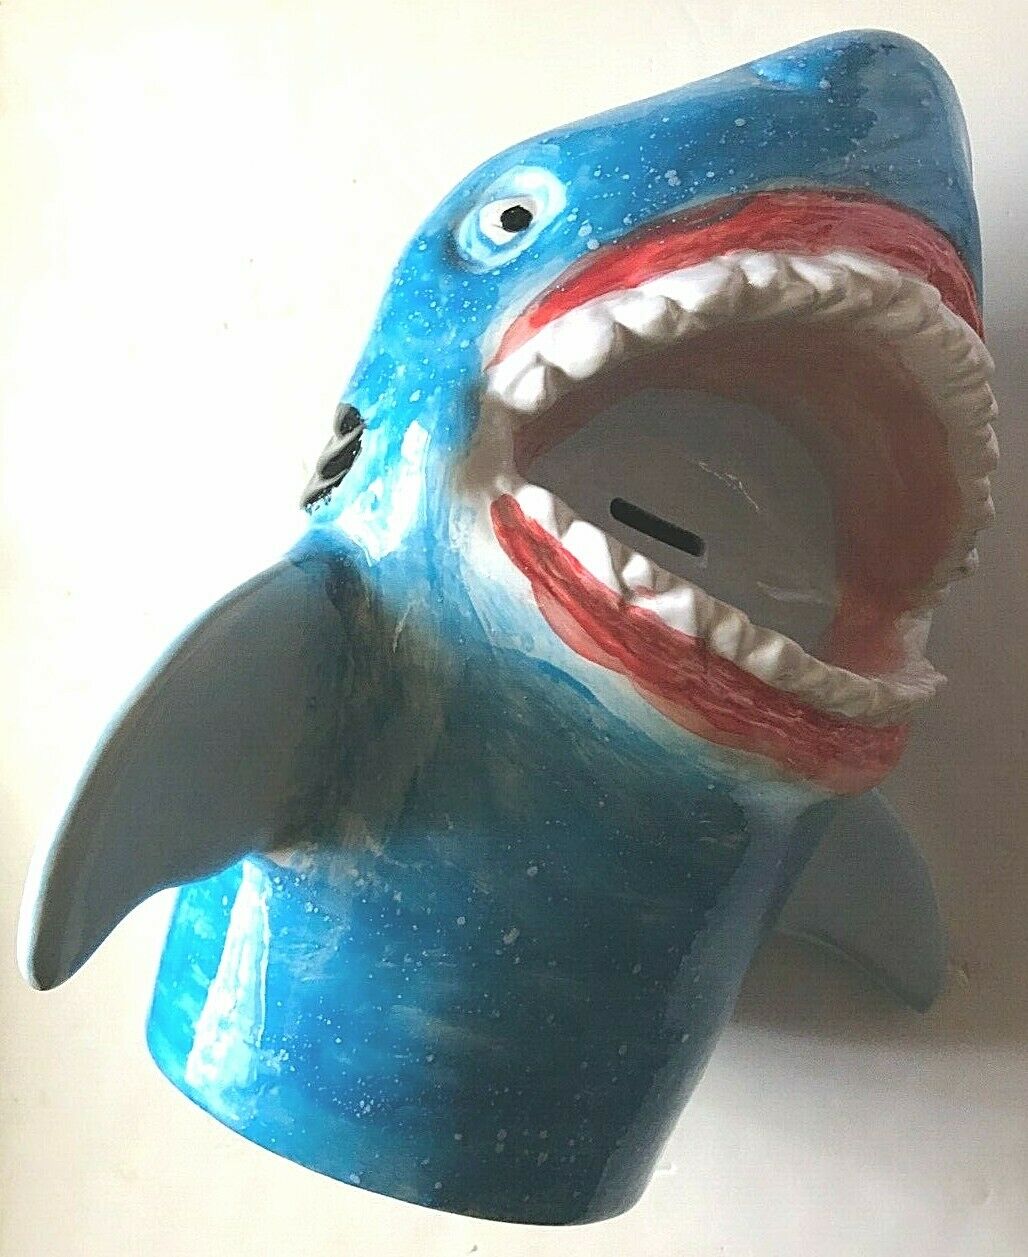 13" Unbranded Ceramic Glazed Blue White Red Black Shark Bank